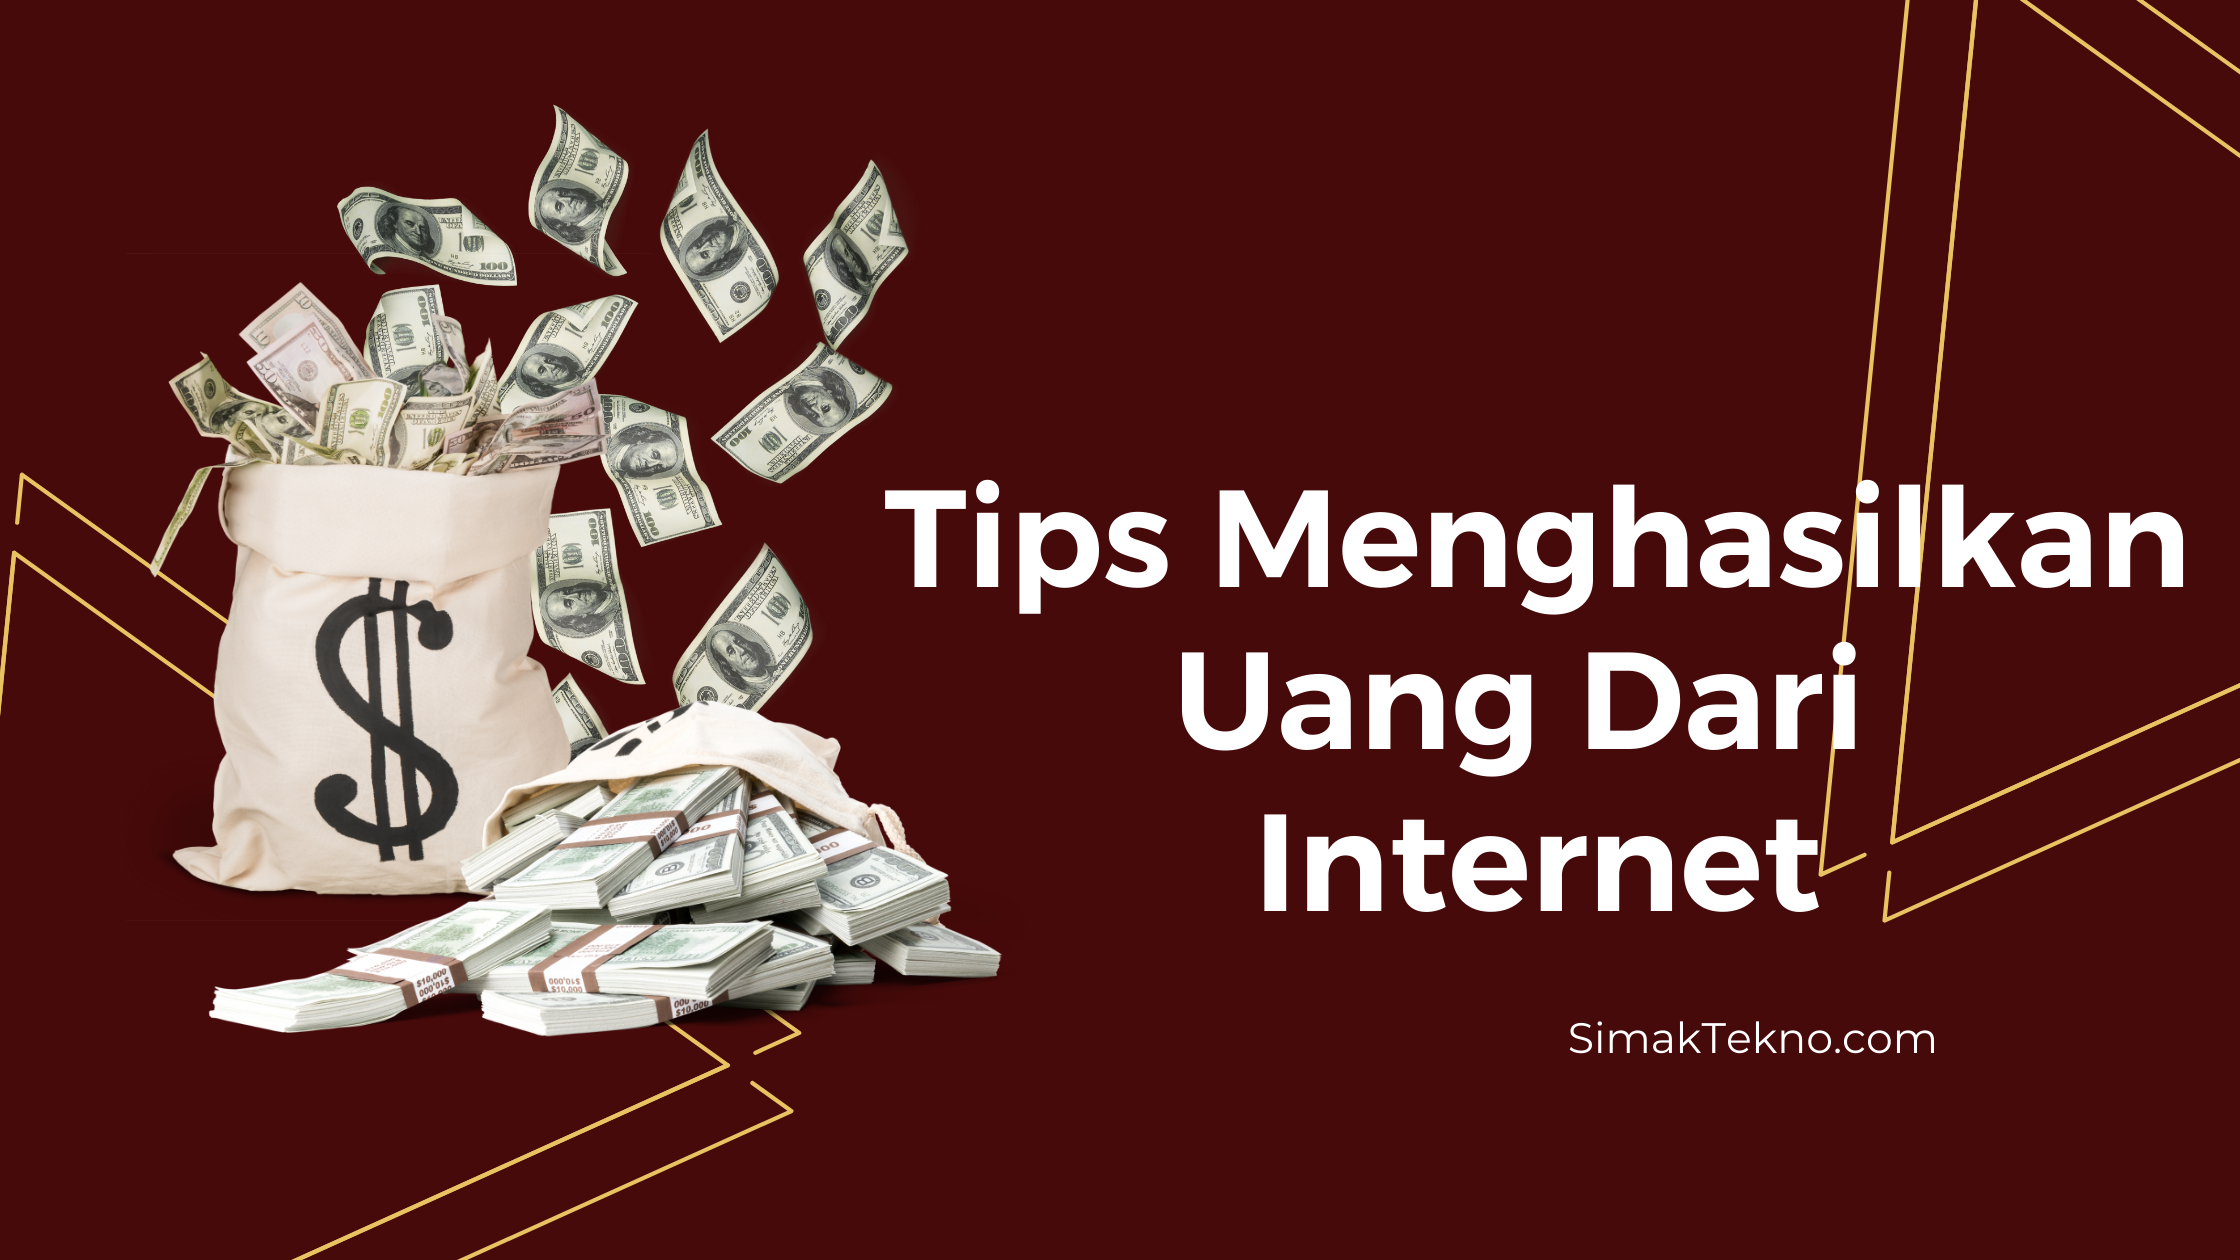 Tips Mendapat Uang dari Internet